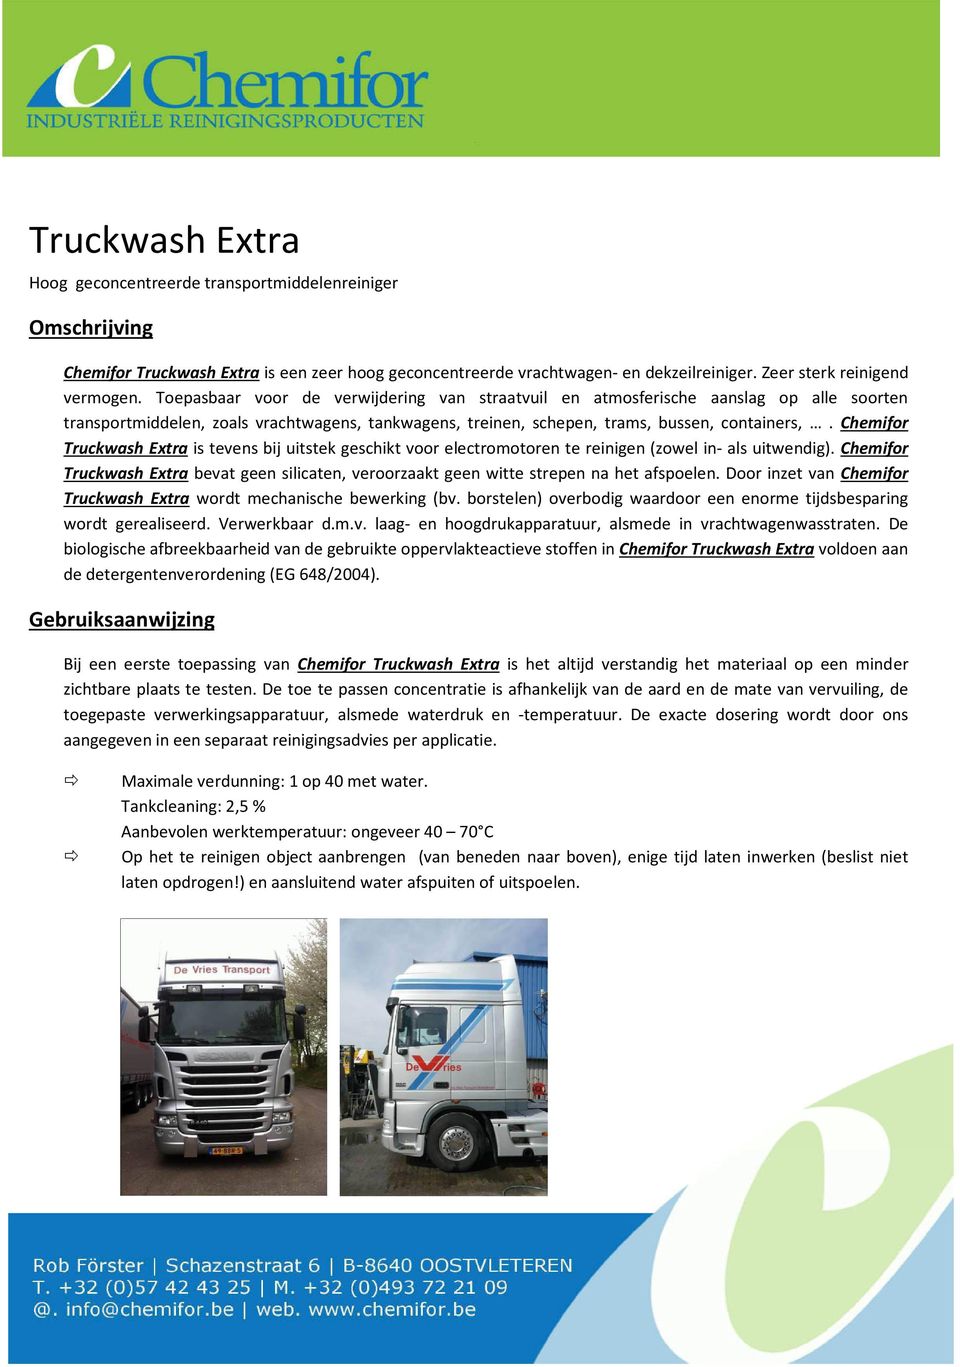 Chemifor Truckwash Extra is tevens bij uitstek geschikt voor electromotoren te reinigen (zowel in- als uitwendig).